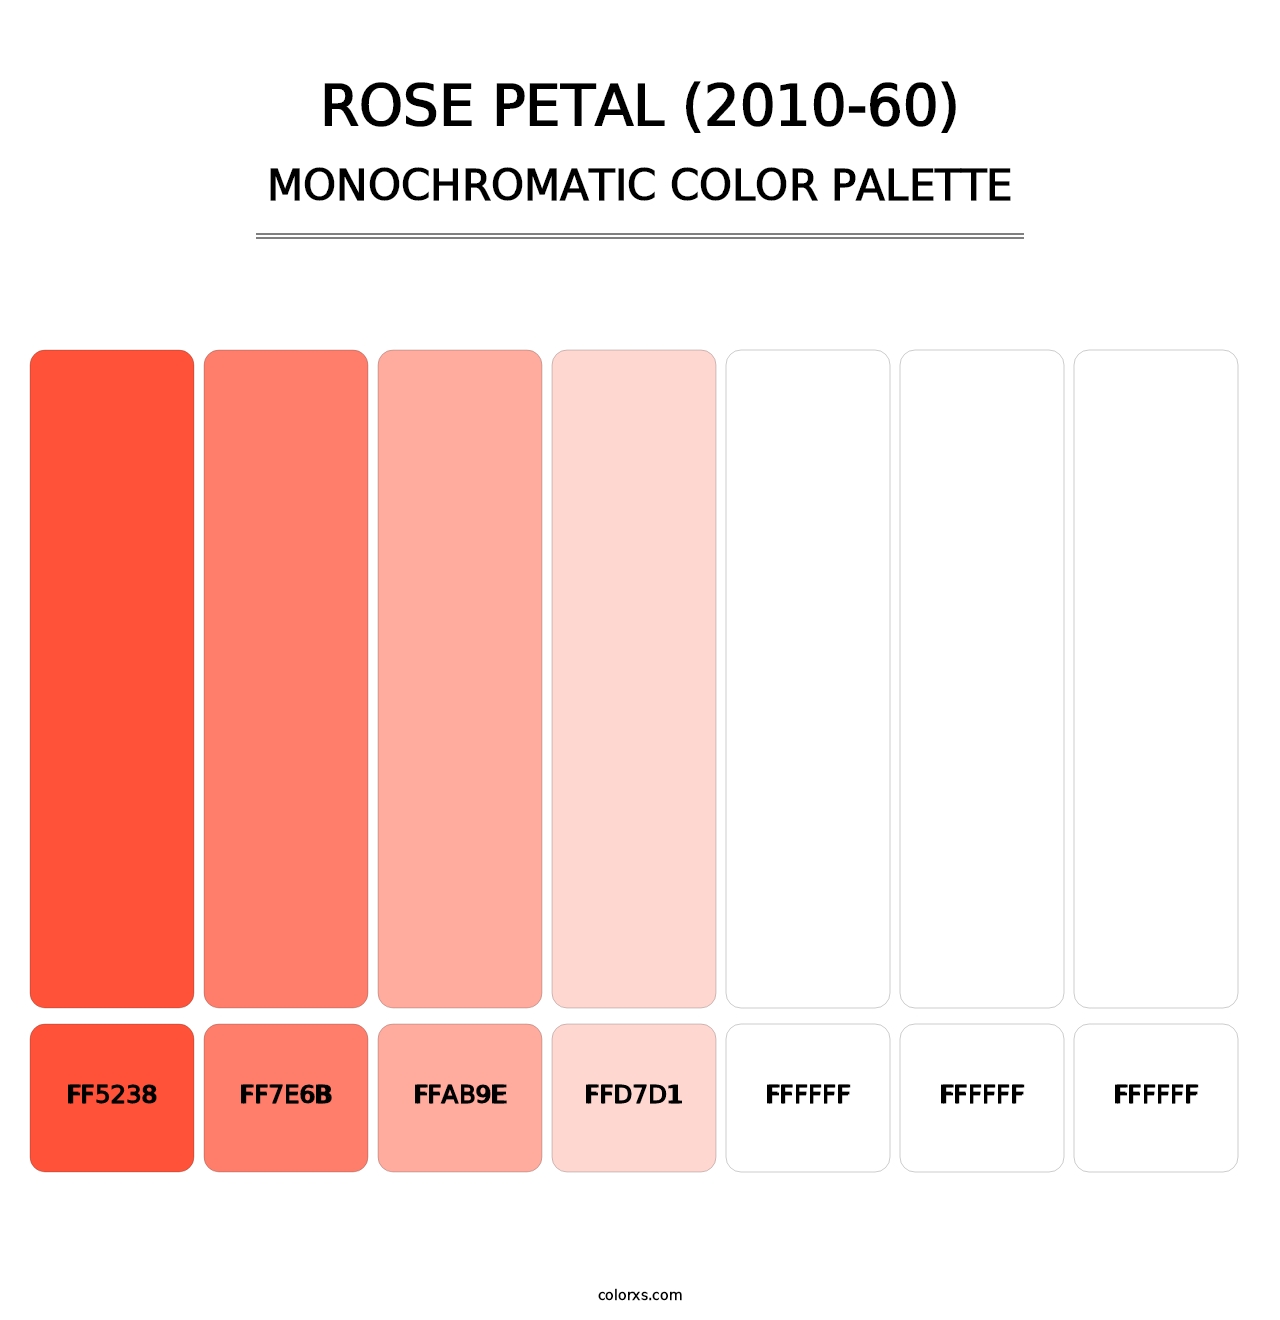 Rose Petal (2010-60) - Monochromatic Color Palette